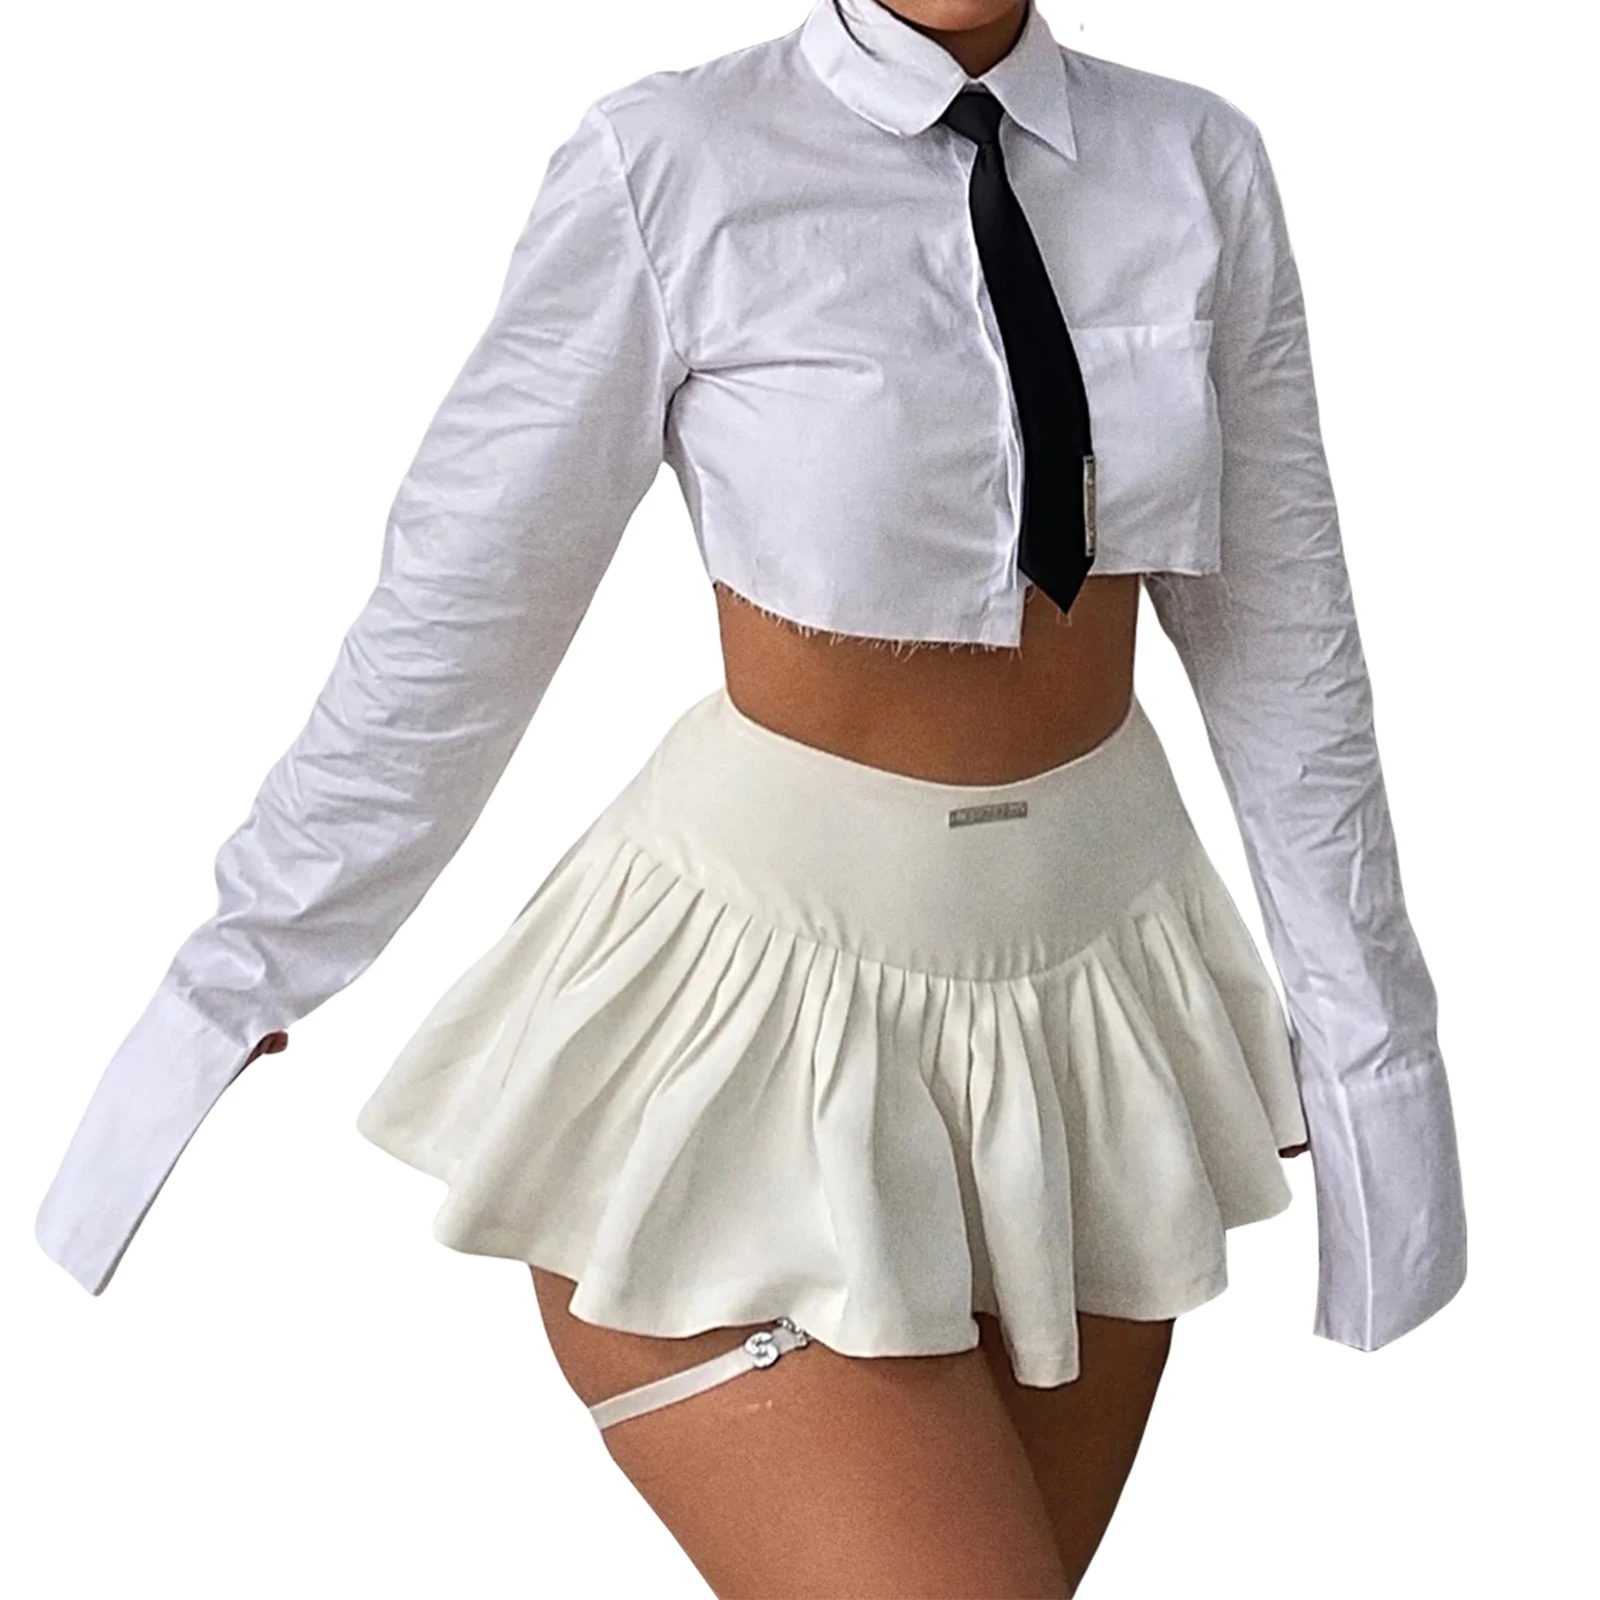 

Женская мини-юбка в складку, белая повседневная юбка с низкой посадкой и шортами с подкладкой